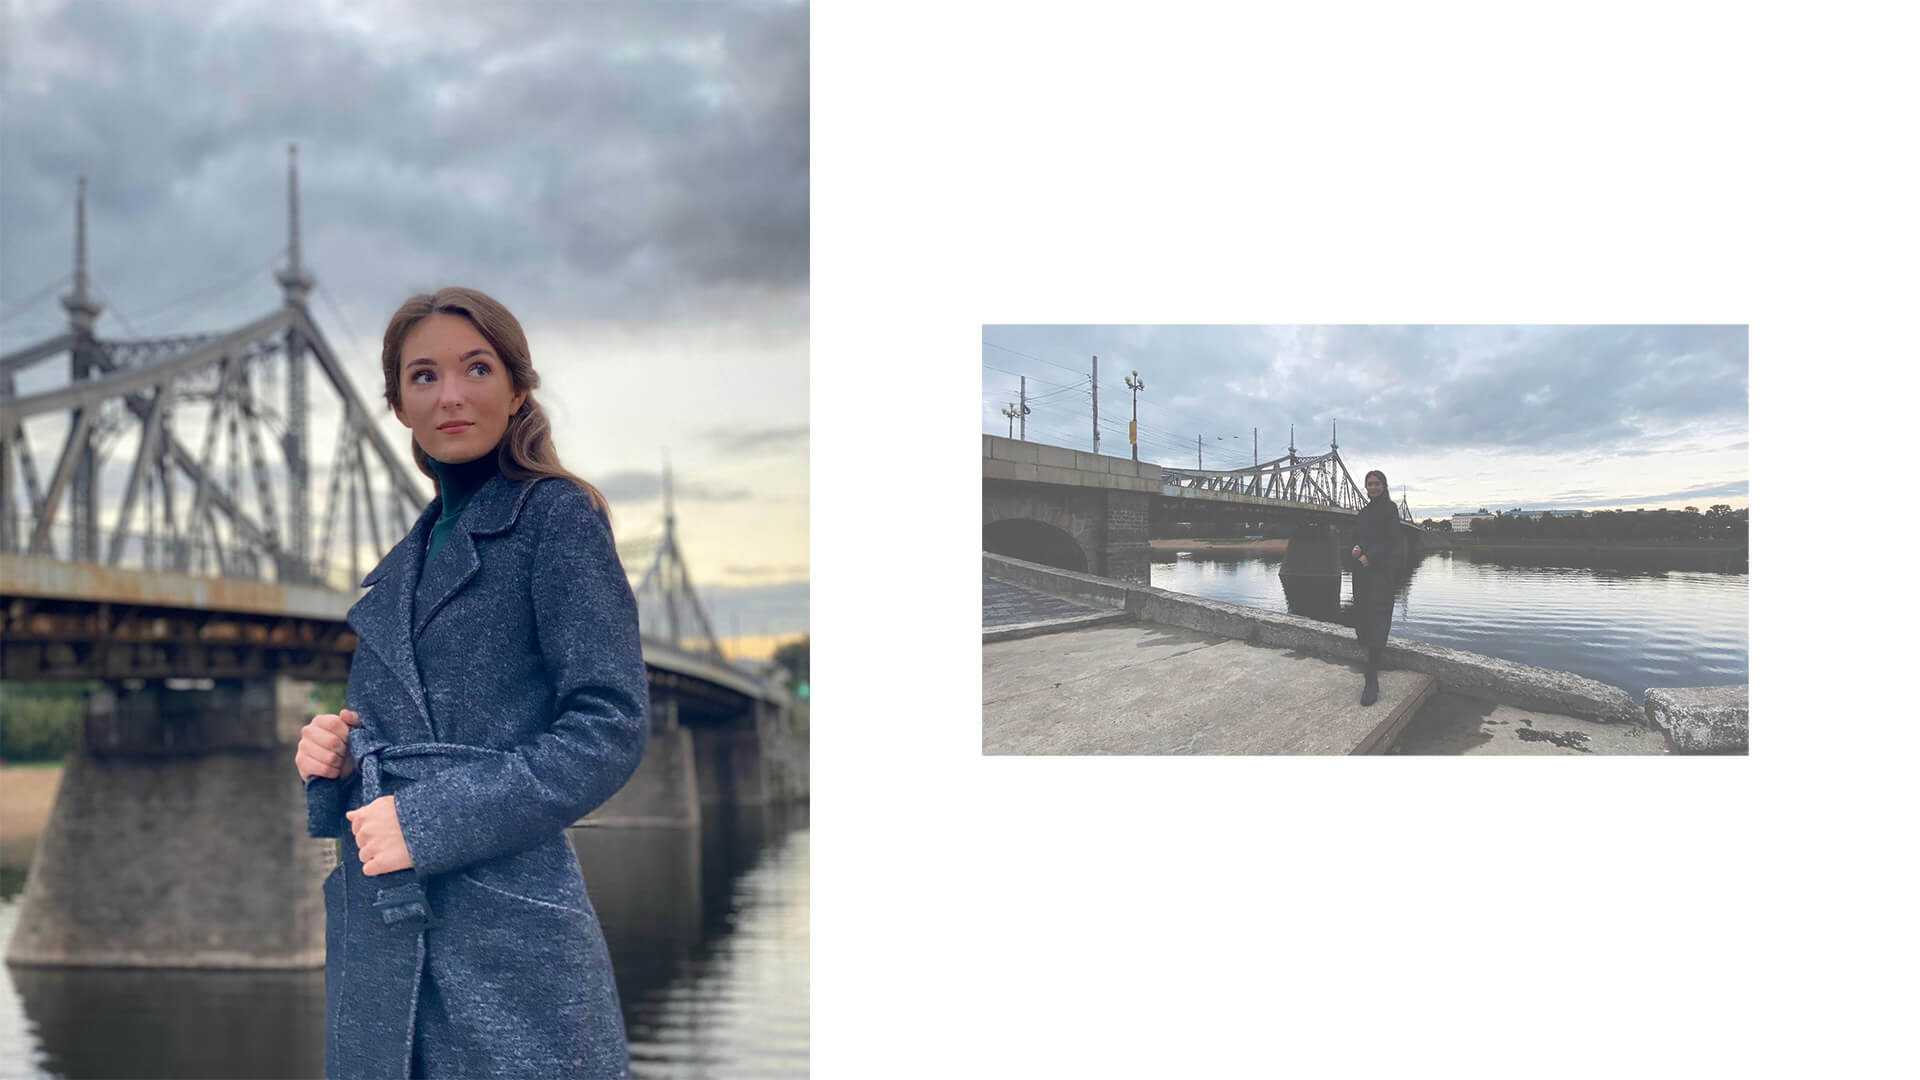 Селфи съёмка на смартфон на фоне старого волжского моста в Твери с девушкой 